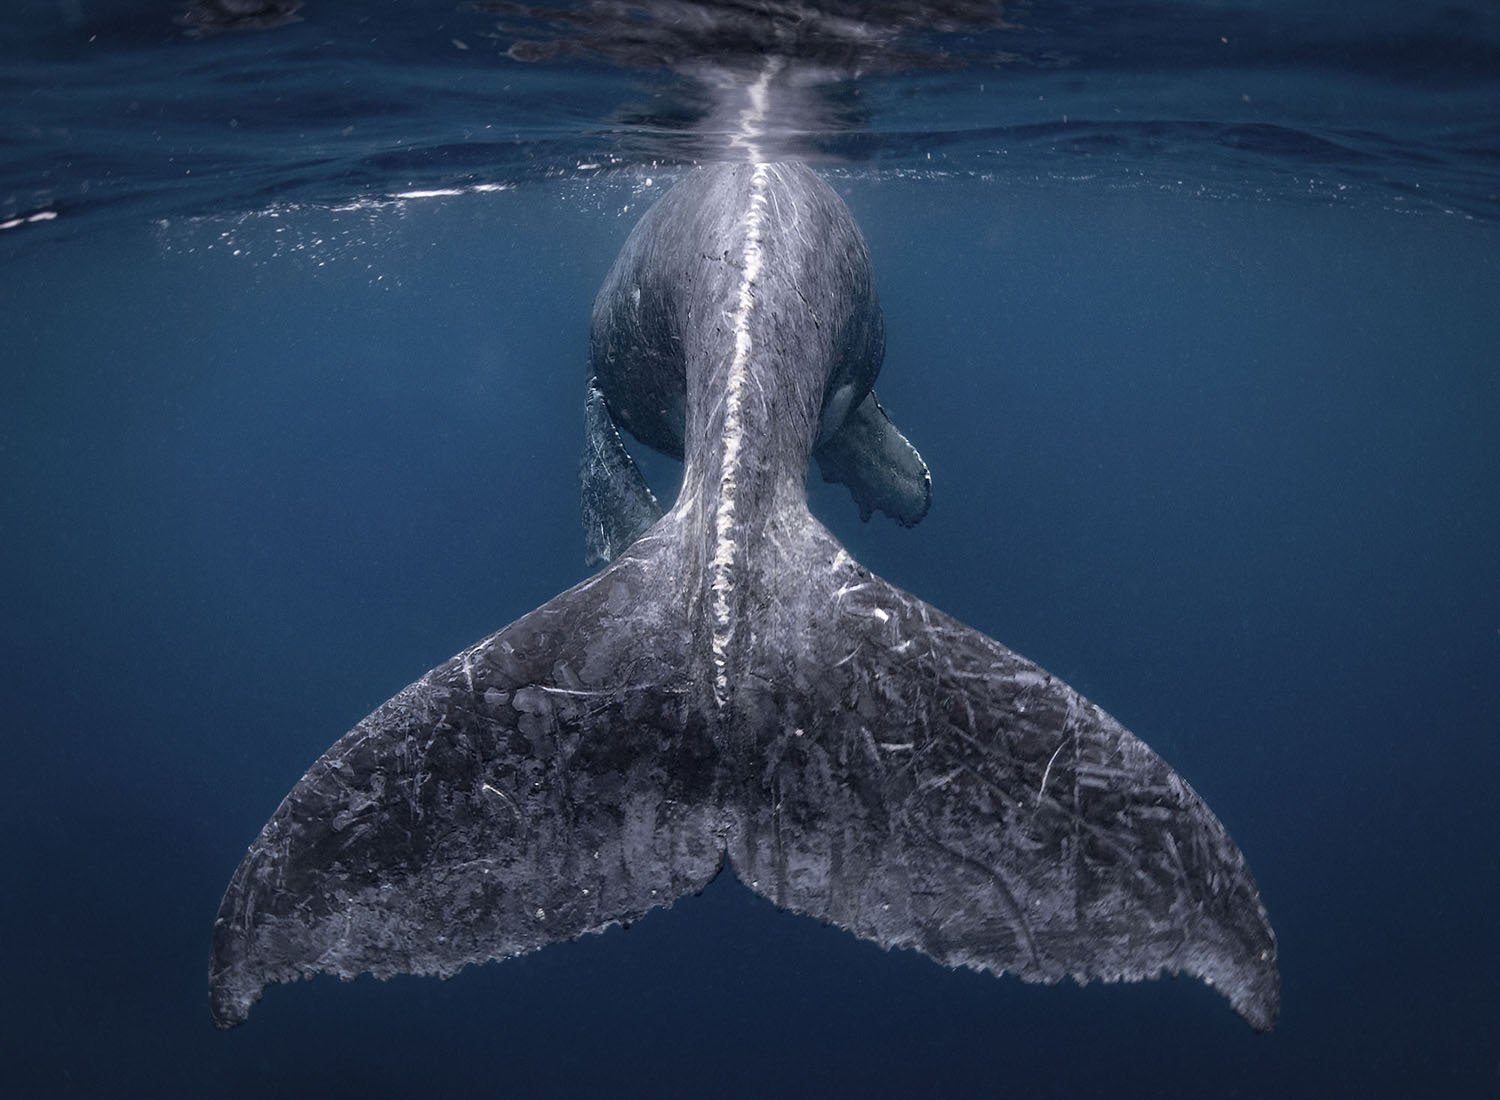 Rabo de baleia